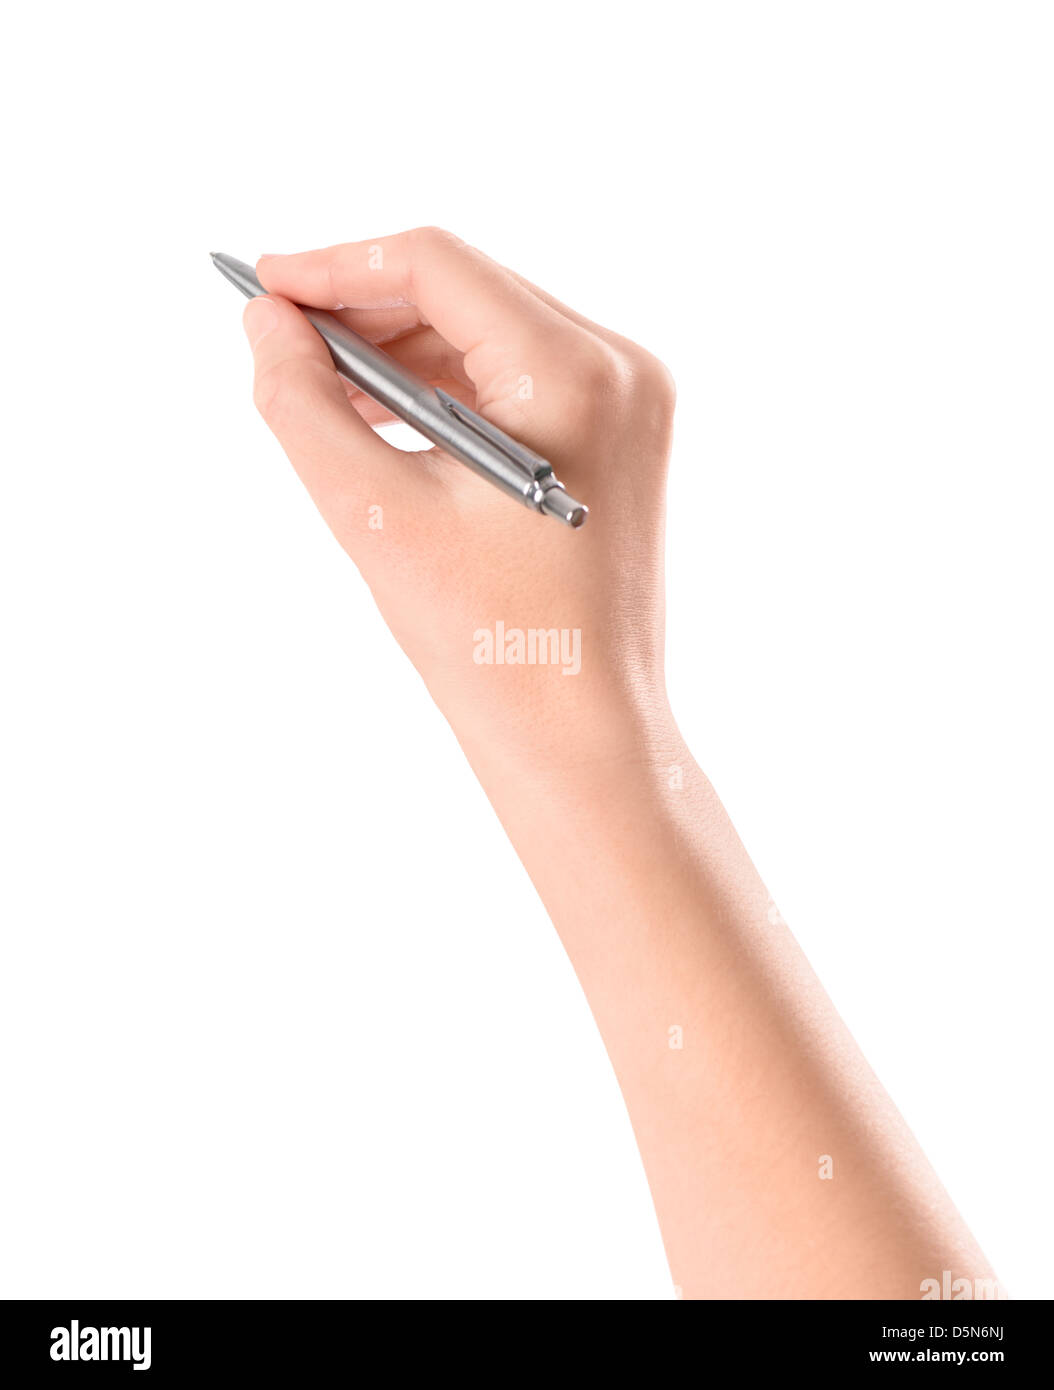 Chiusura del braccio le donne scrivere con la penna metallica. Isolato su sfondo bianco. Foto Stock